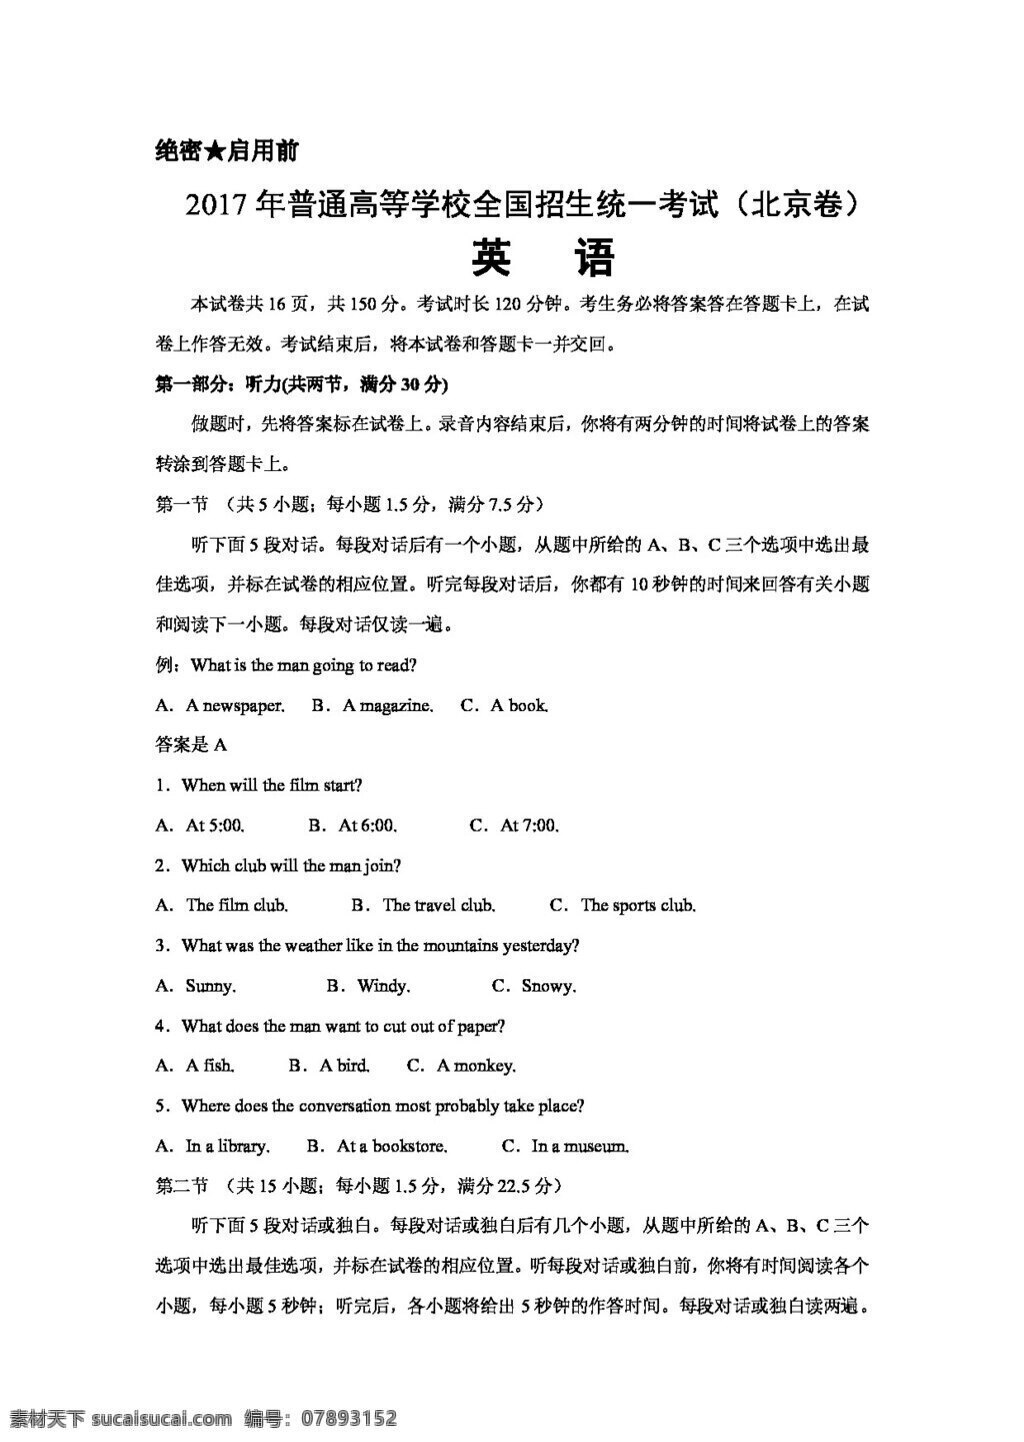 高考 专区 英语 北京 卷 试题 高考专区 人教版 试卷